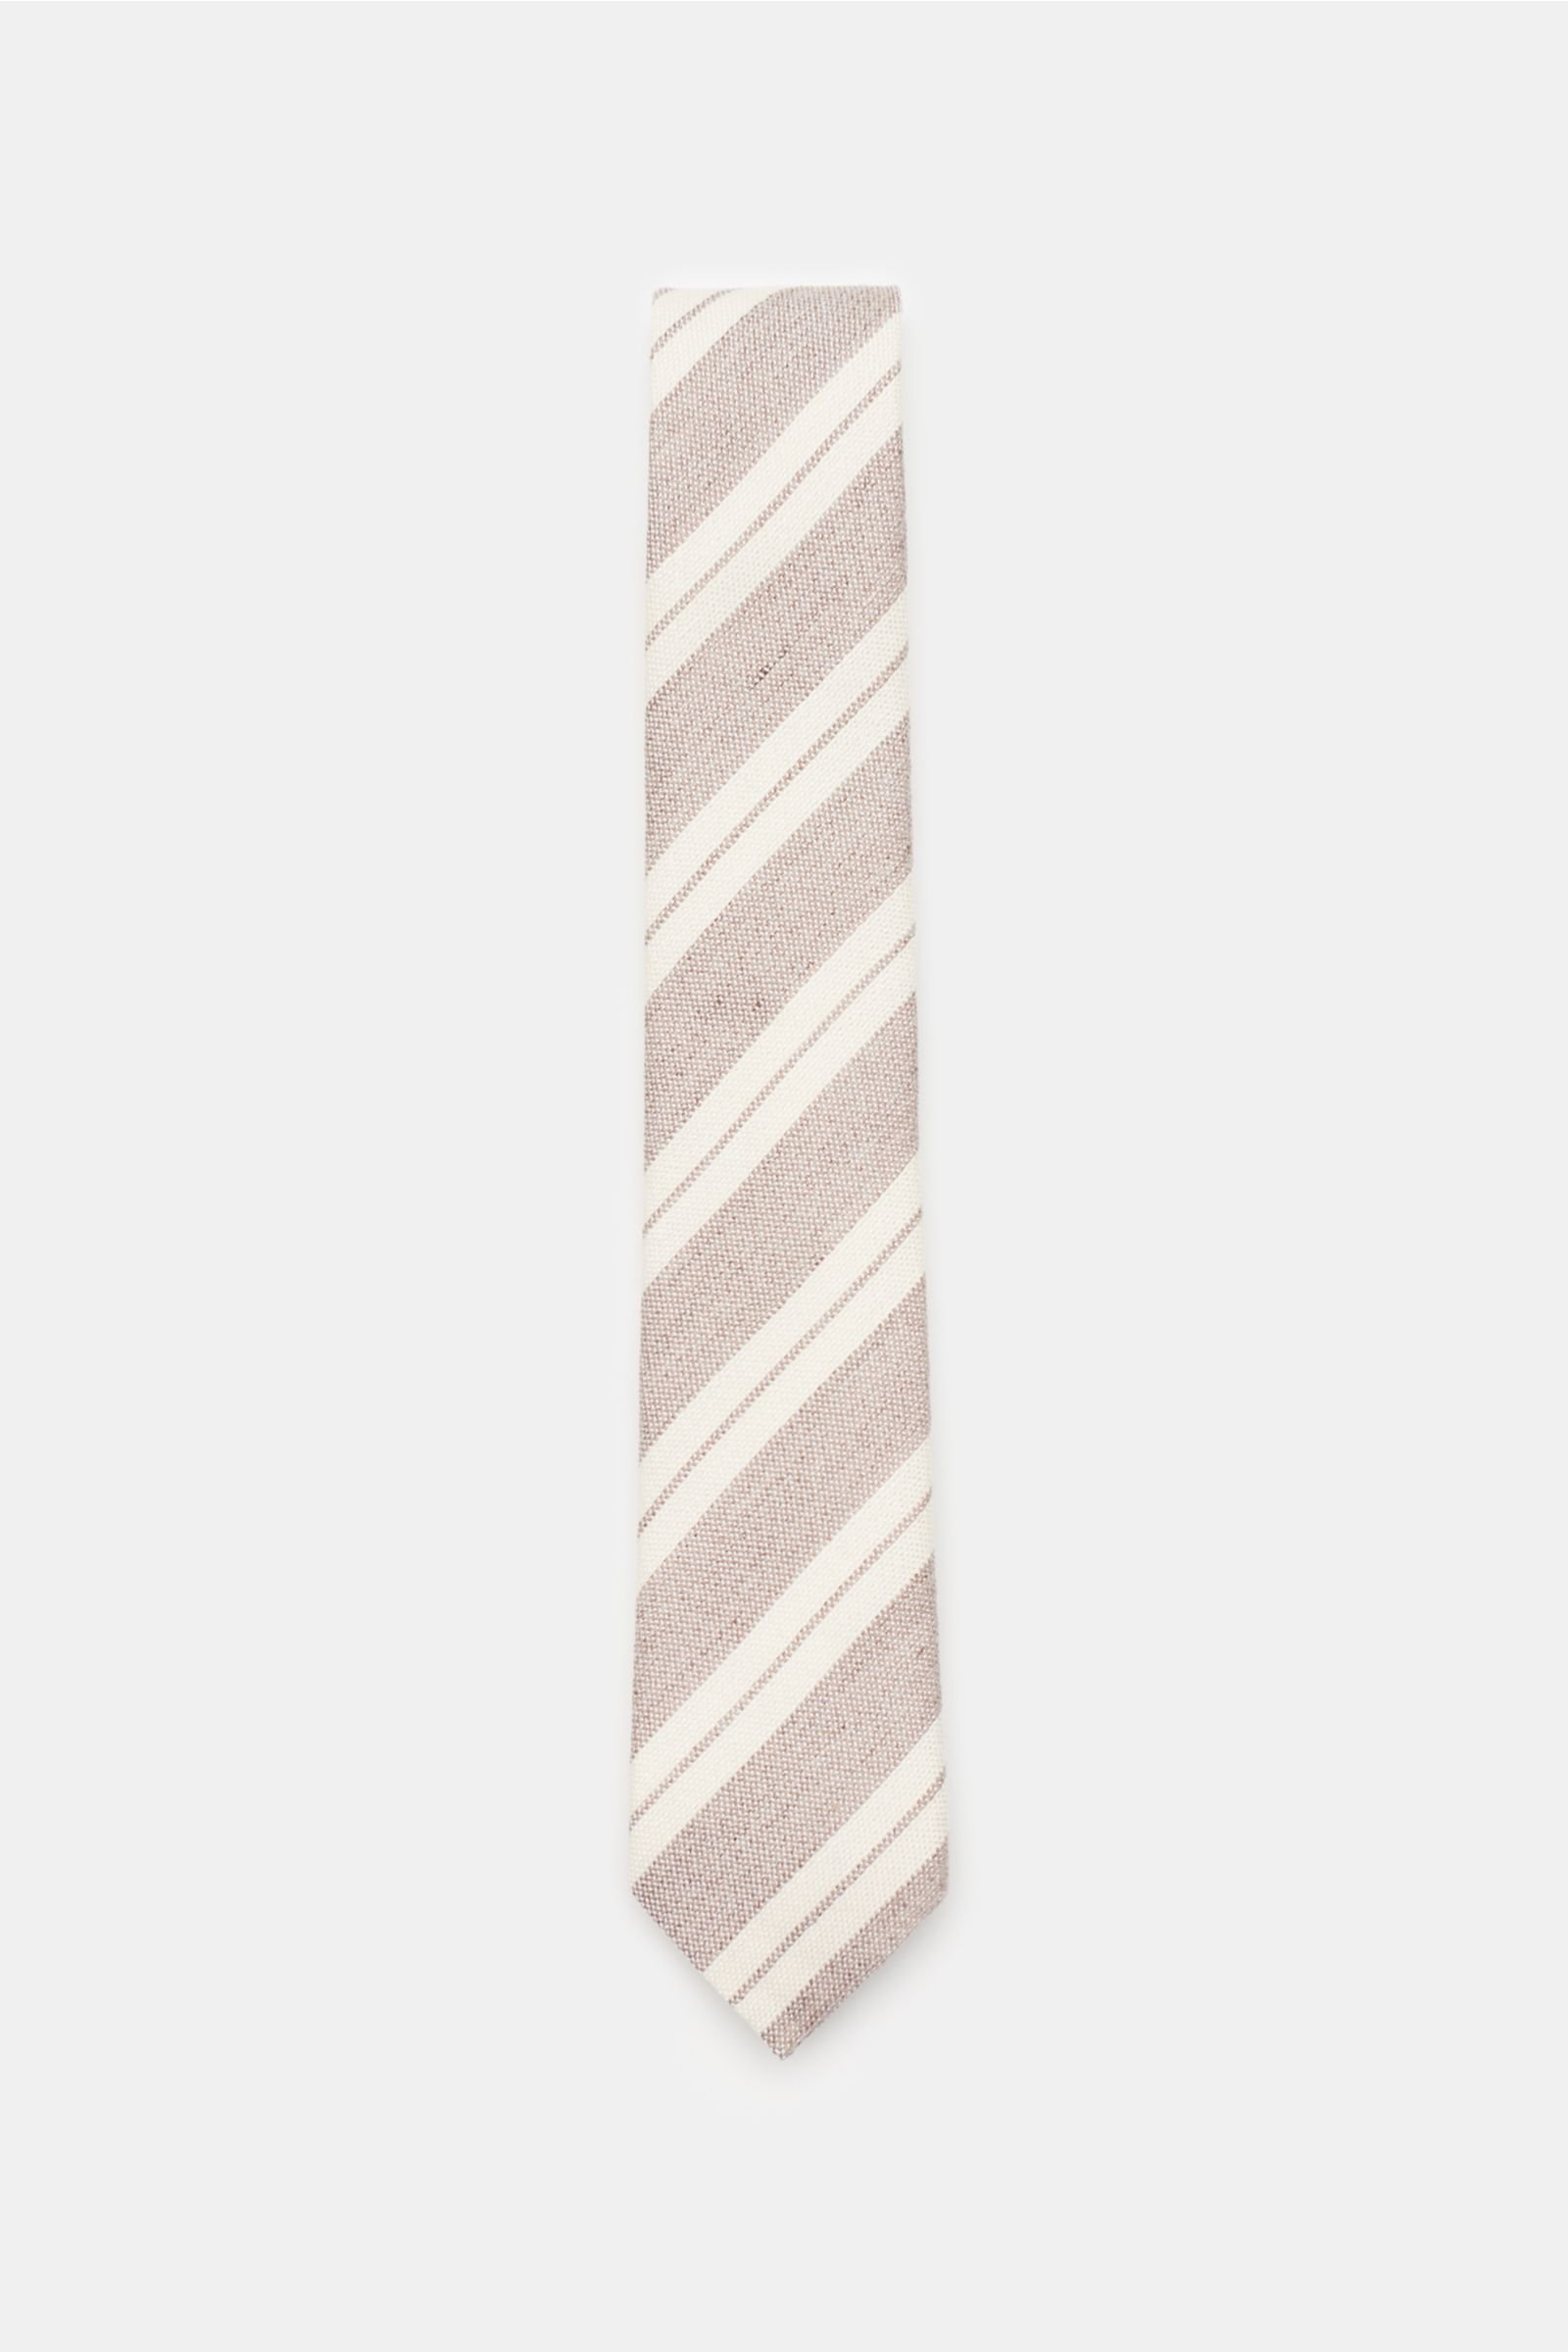 Krawatte beige/creme gestreift